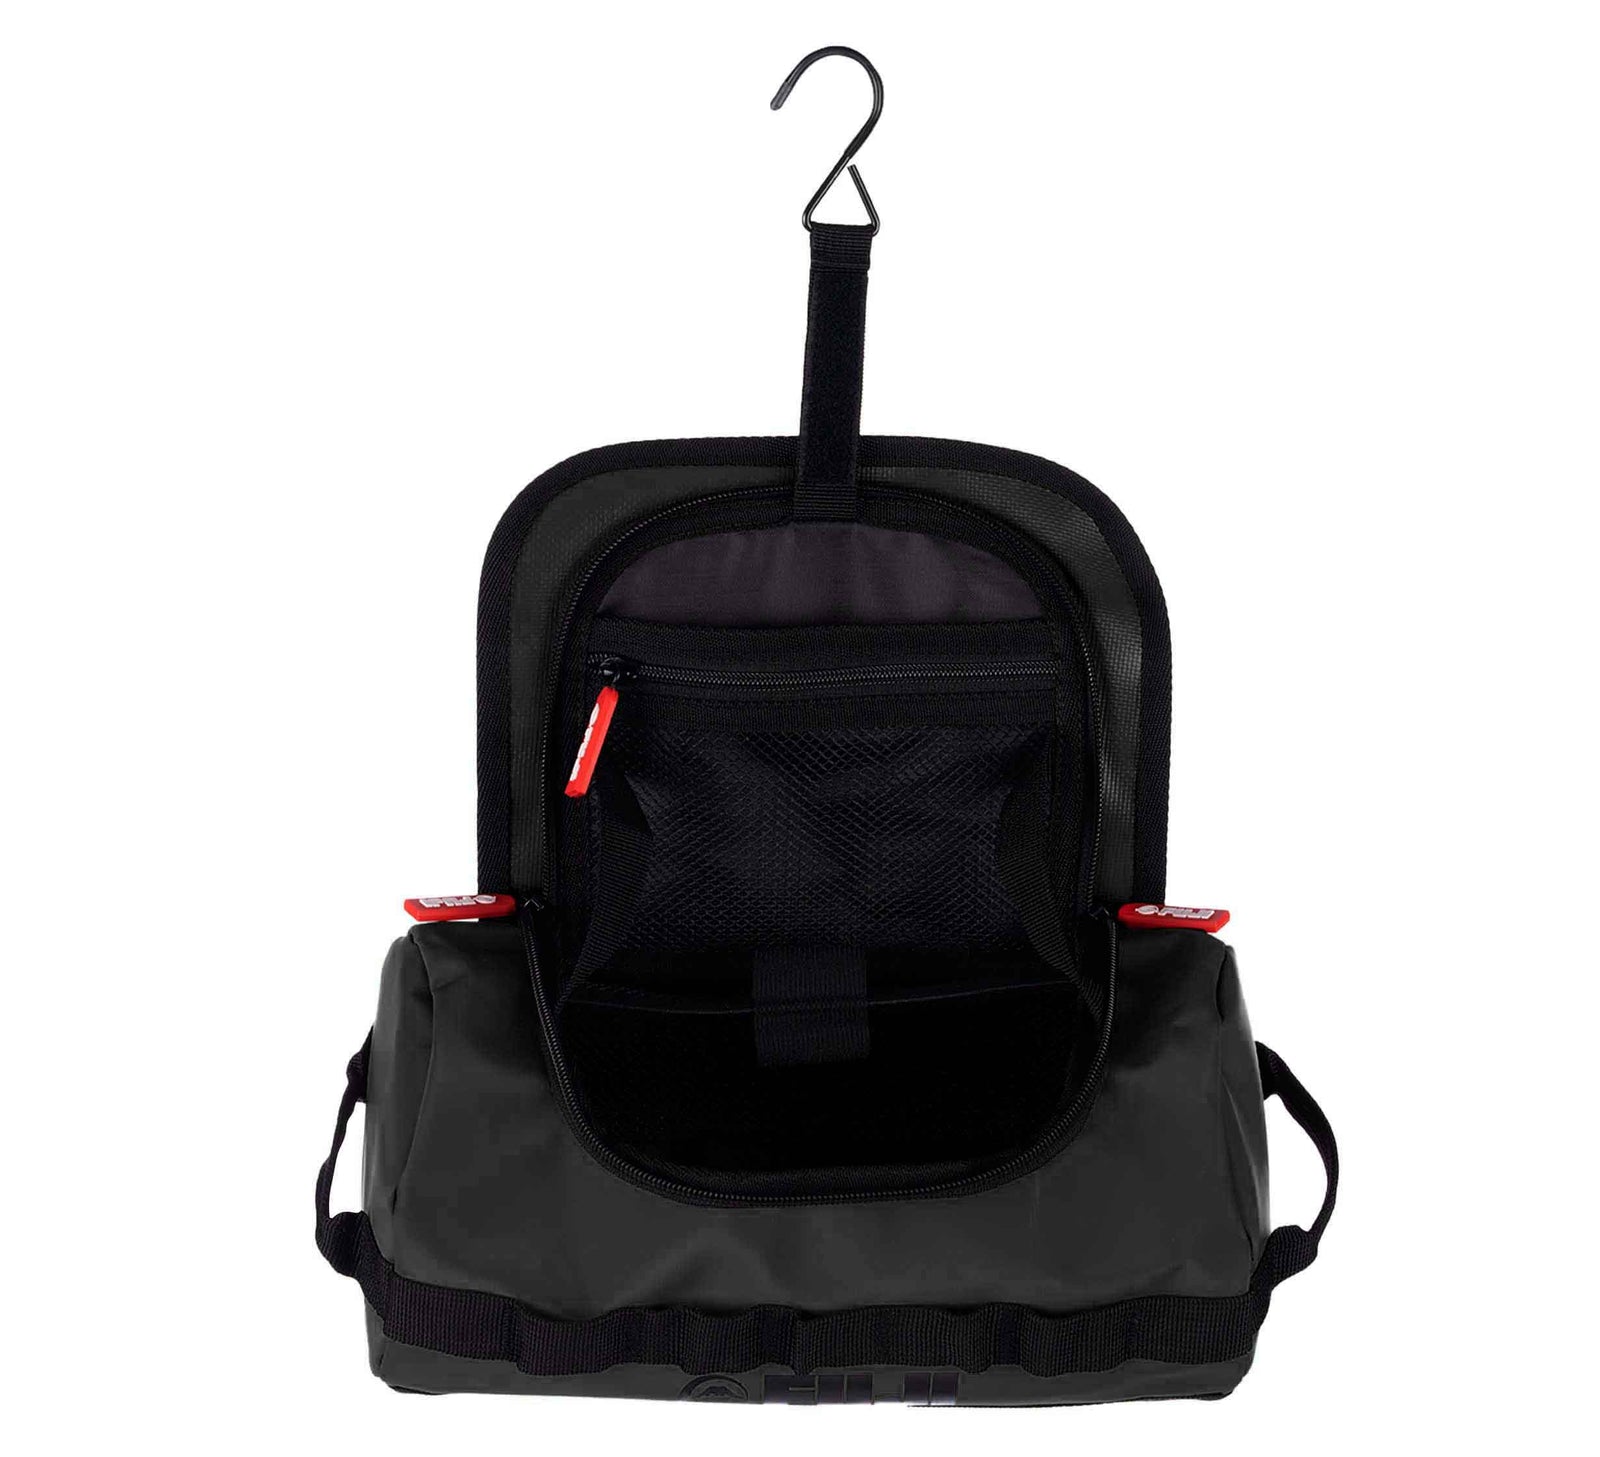 Original Audi Sport Wash Bag Toiletry Travel Bag Black 3152202000 Samsonite